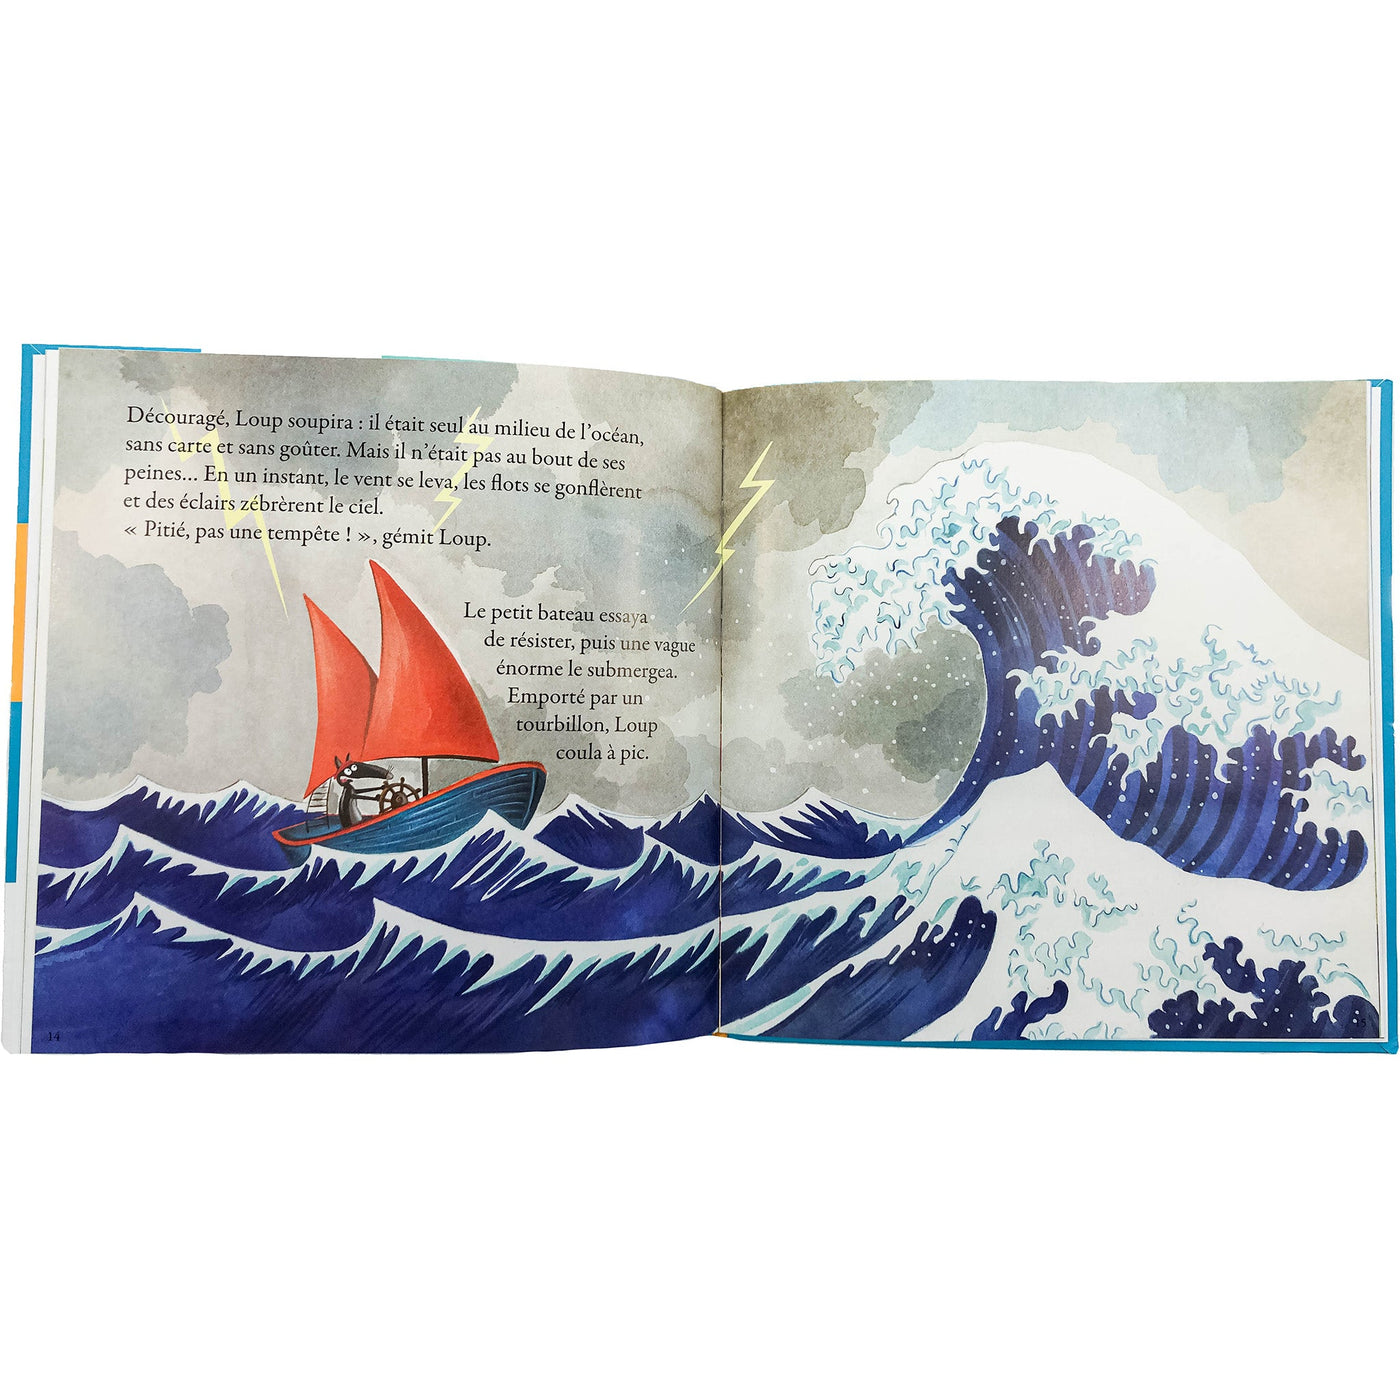 Livre "Le loup qui revait d'océan" de seconde main pour enfant à partir de 3 ans - photo alternative_1